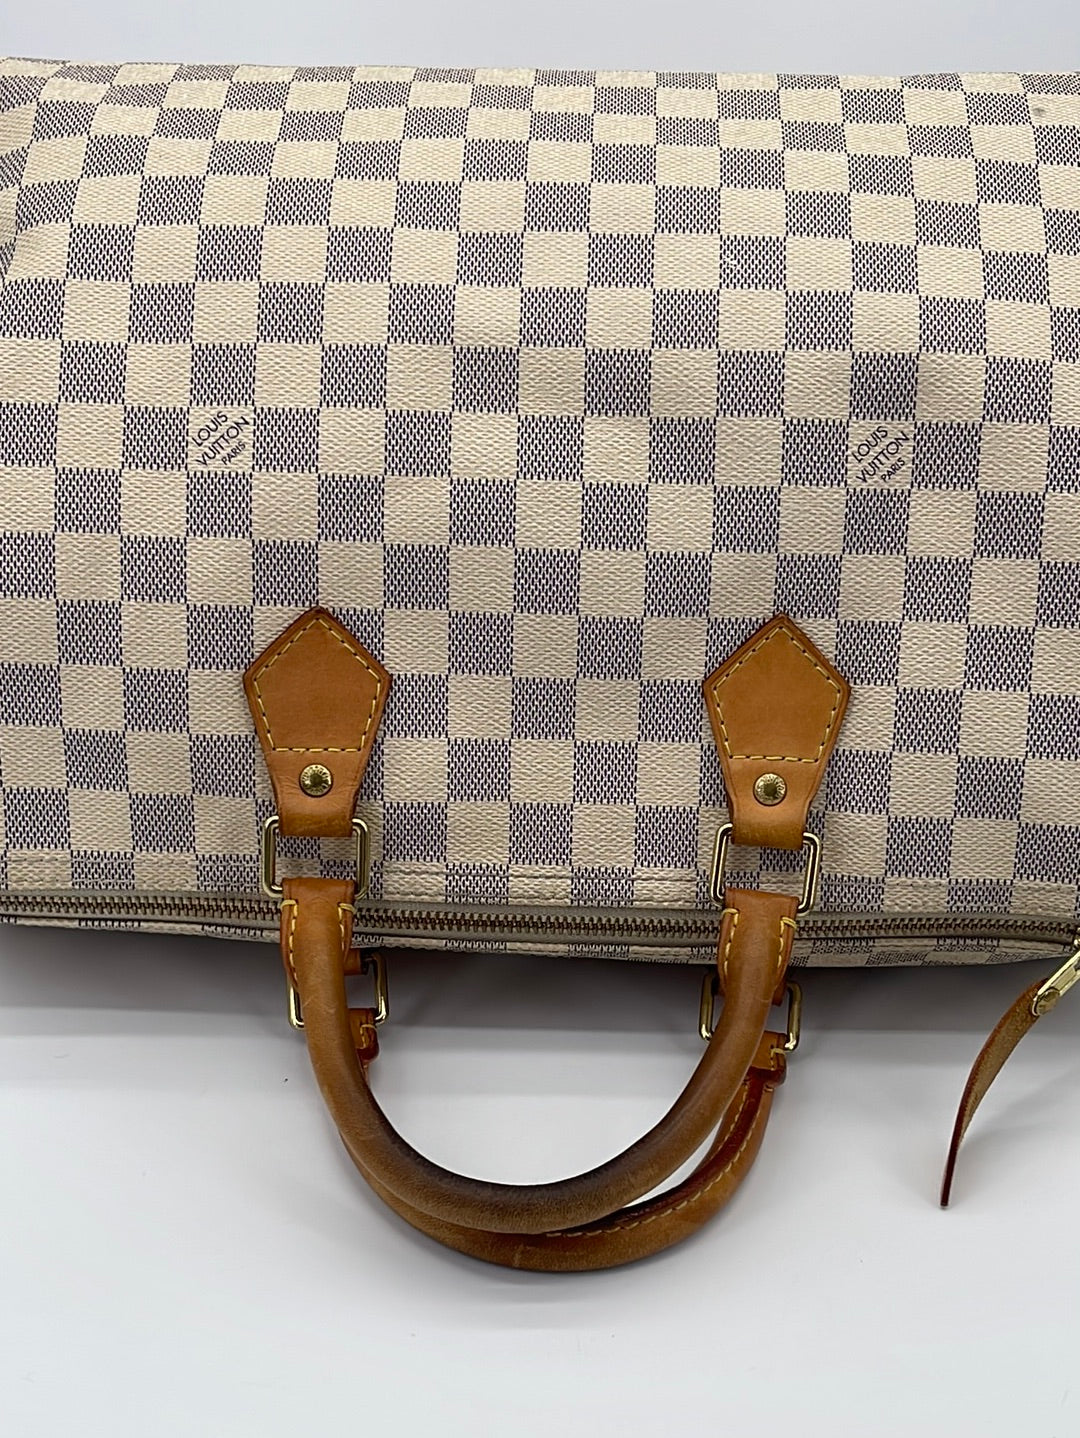 Authentic Louis Vuitton Damier Azur Speedy 35 Bag